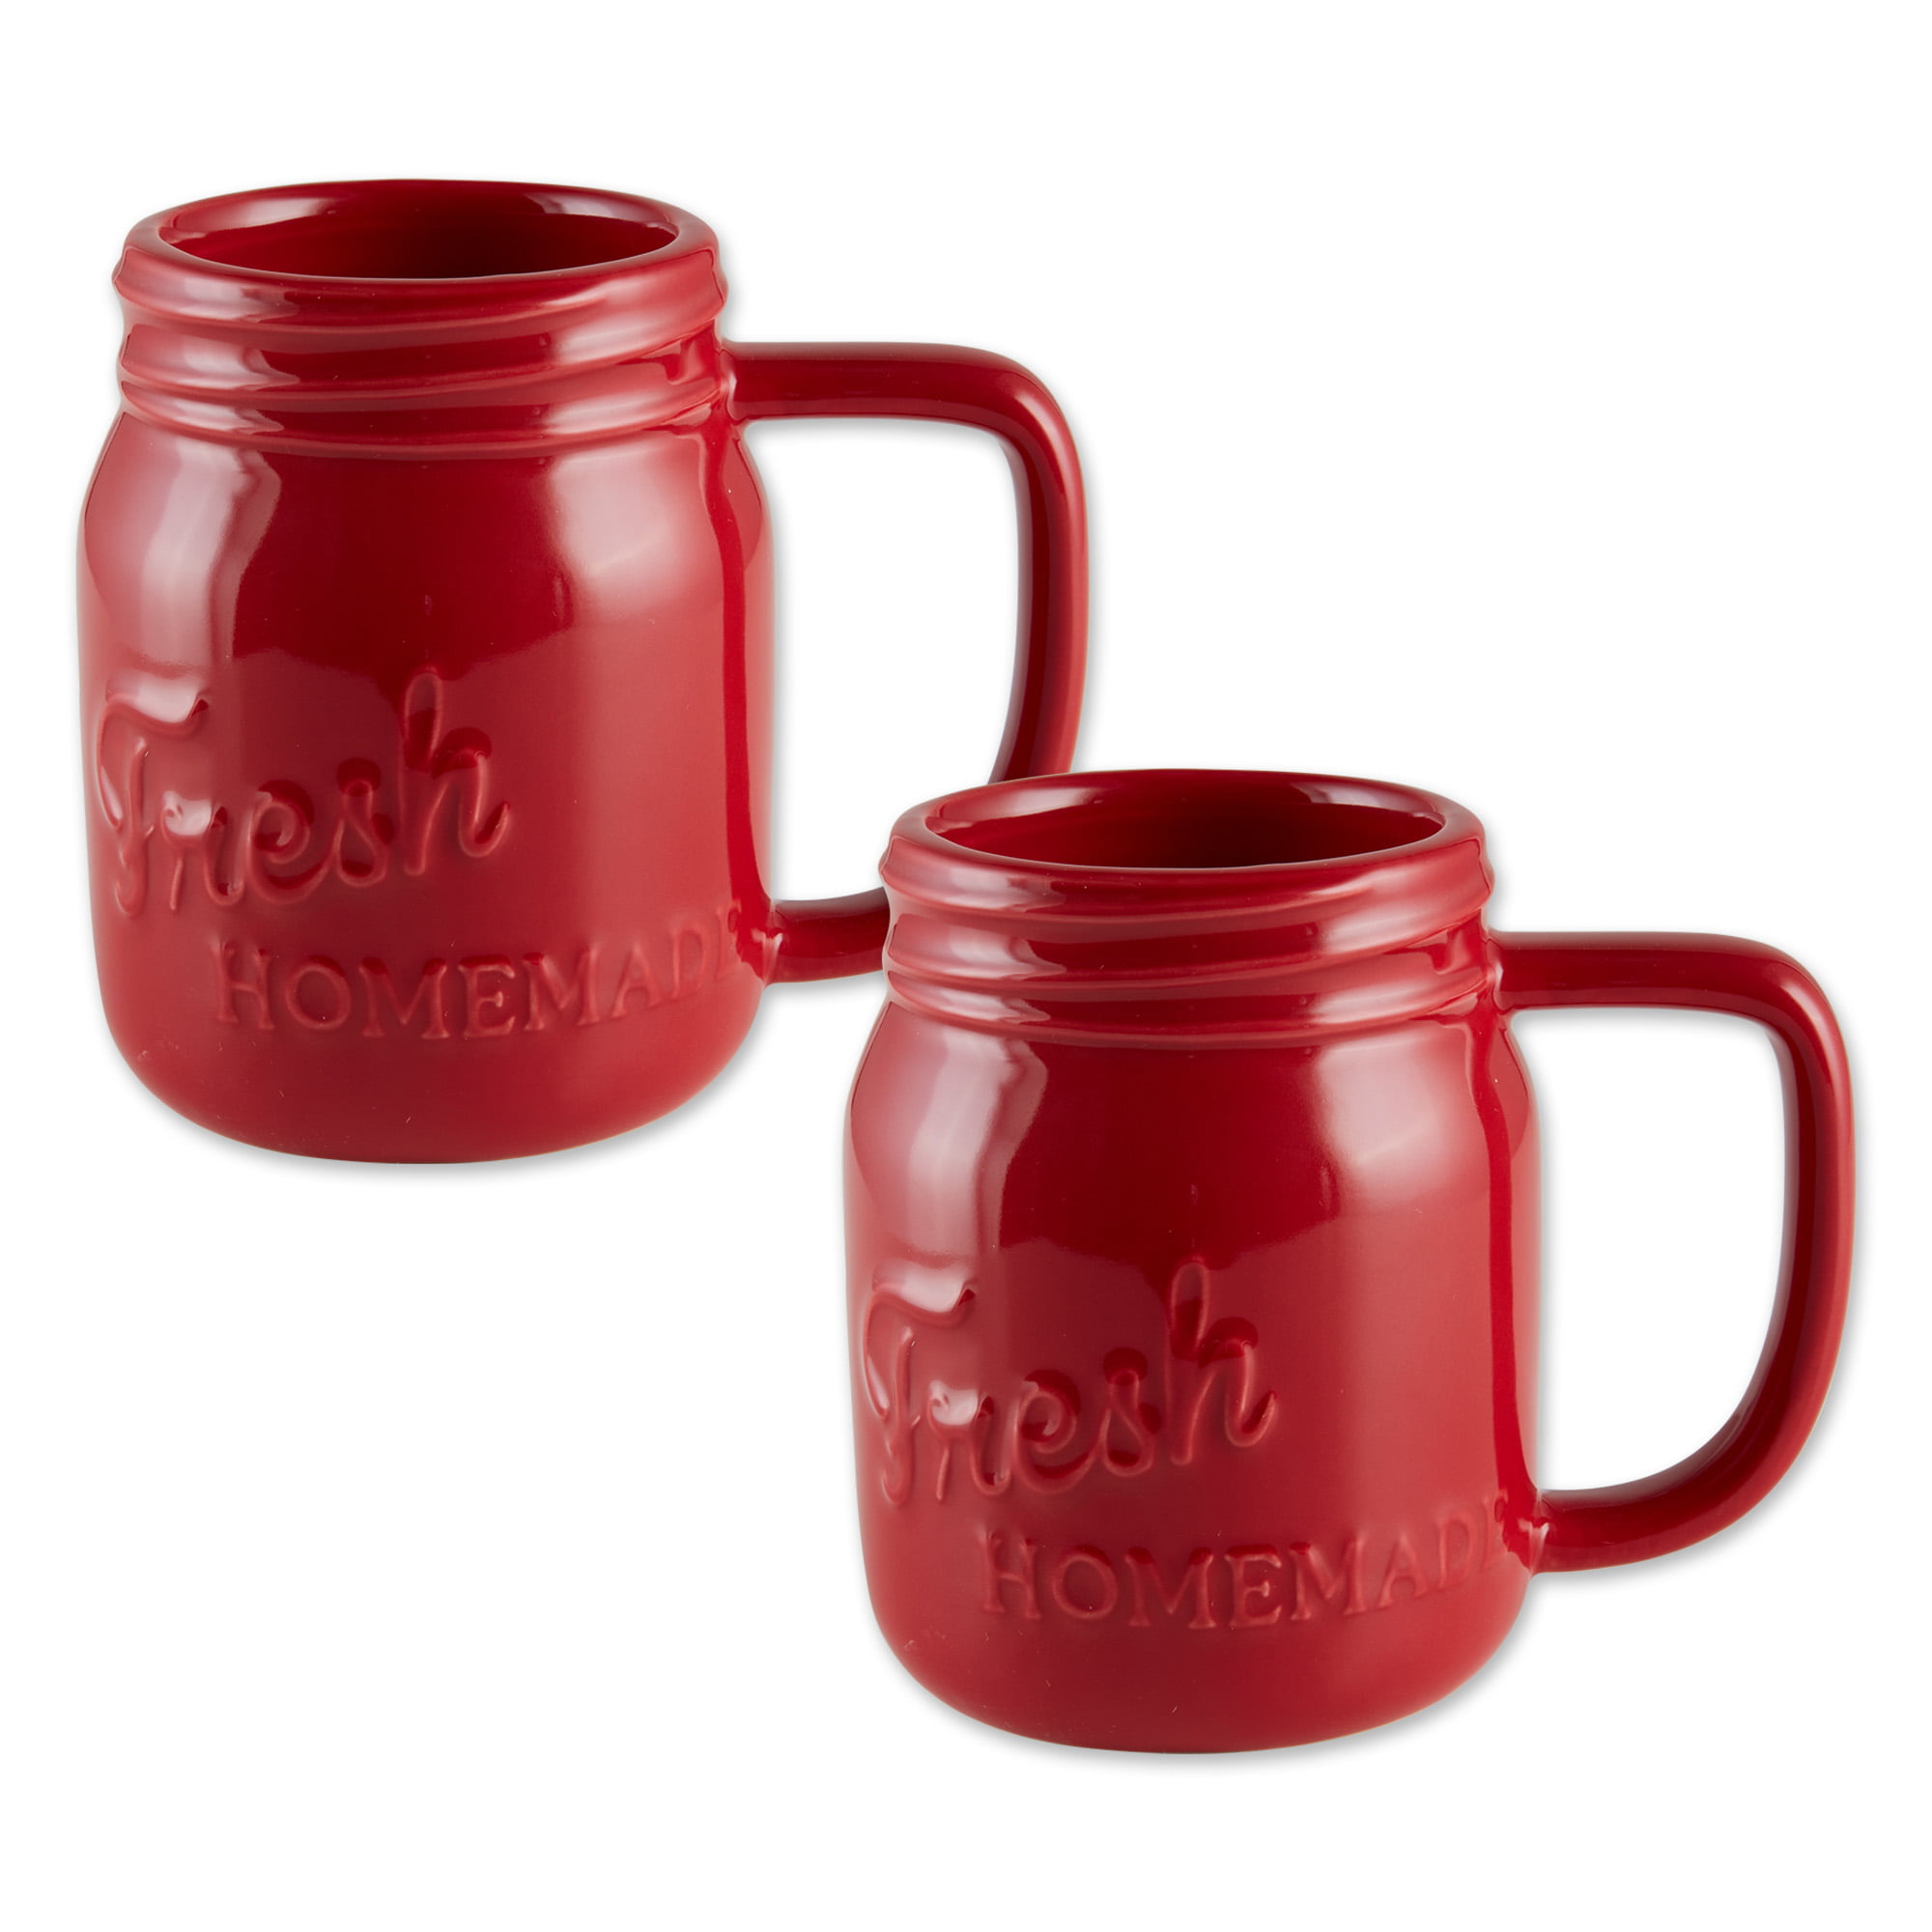 Self Love First mug positive mug self love drinkware Iced Coffee Glass mason jar Love Mason Jar Iced Coffee Cup Glass Coffee Cup